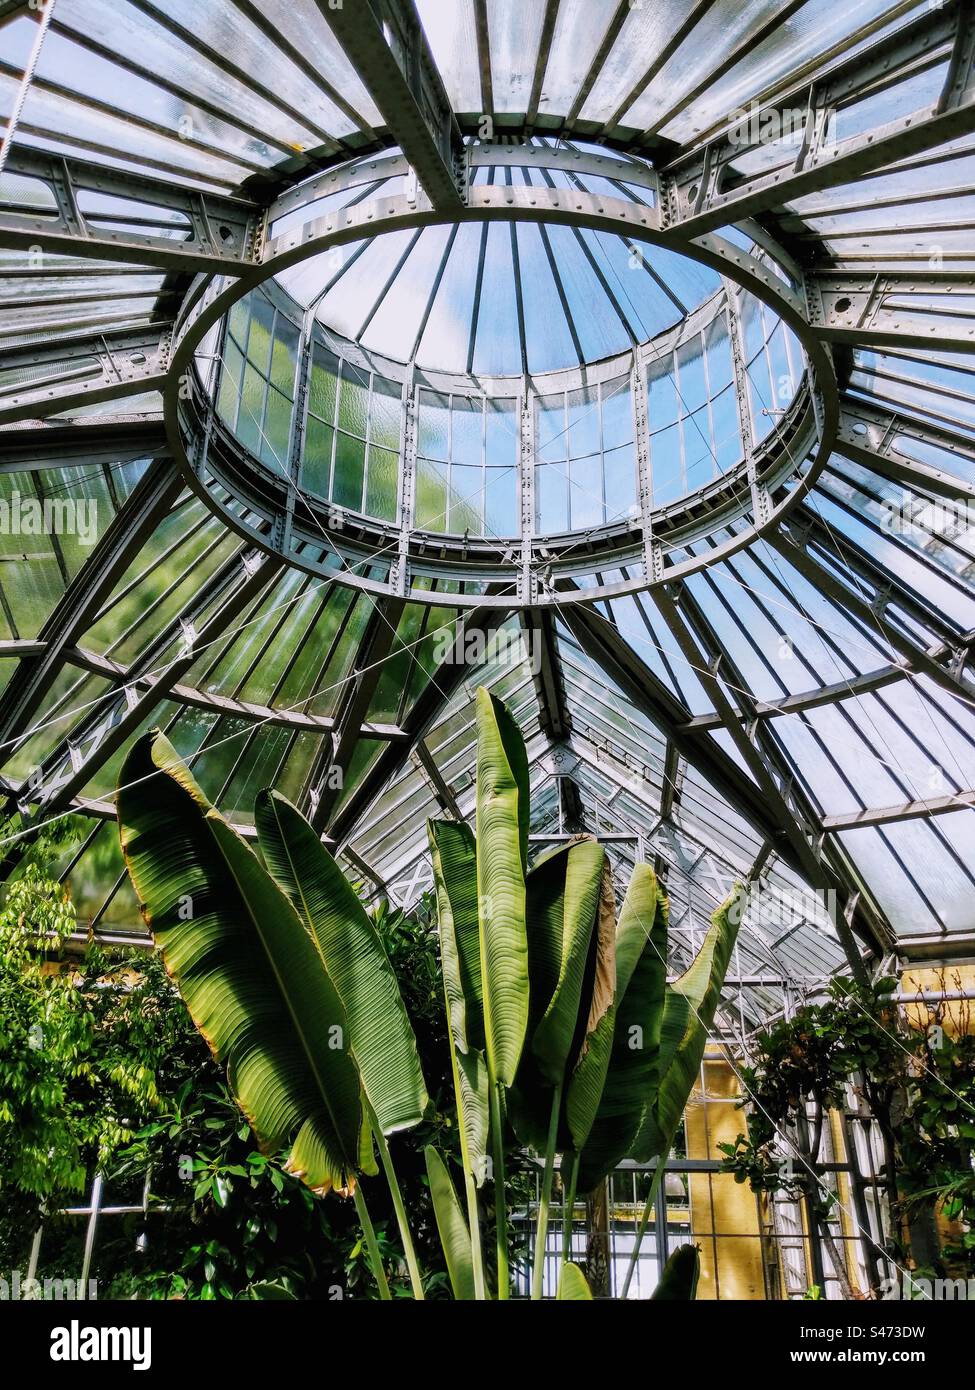 Gewächshausbau aus Metall- und Glasscheiben, Palmenblätter im botanischen Garten Hortus Botanicus in Amsterdam, Niederlande Stockfoto